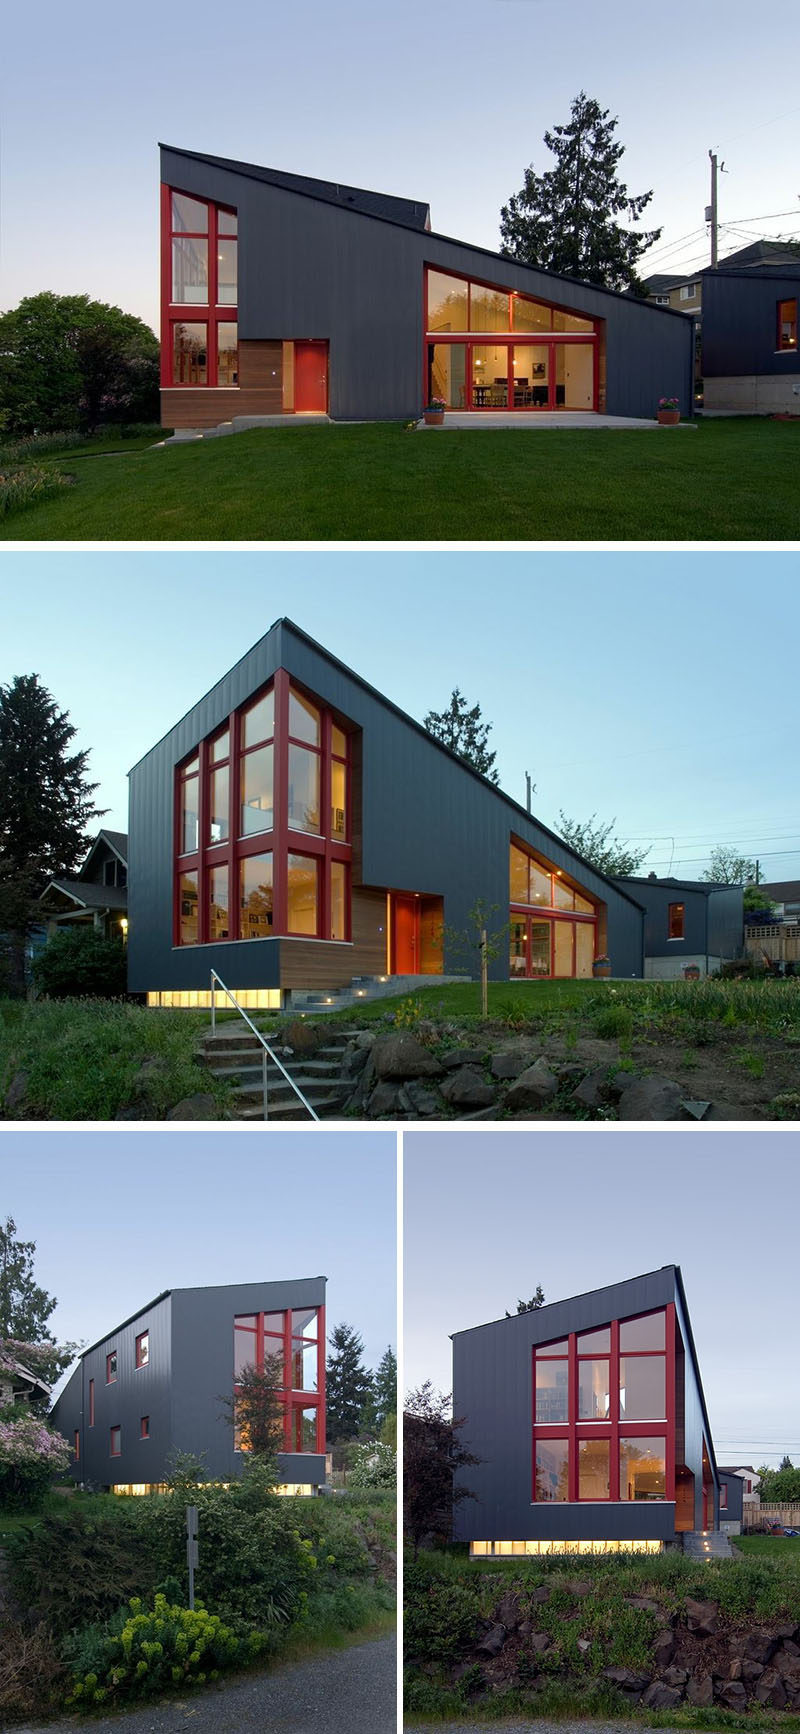  Stettler Design вместе с Paul Michael Davis Architects недавно завершили строительство нового дома в Сиэтле, штат Вашингтон, с наклонной крышей и большими окнами, выходящими на окрестности. #ModernHouse #SlopedRoof #ModernArchitecture # Windows 